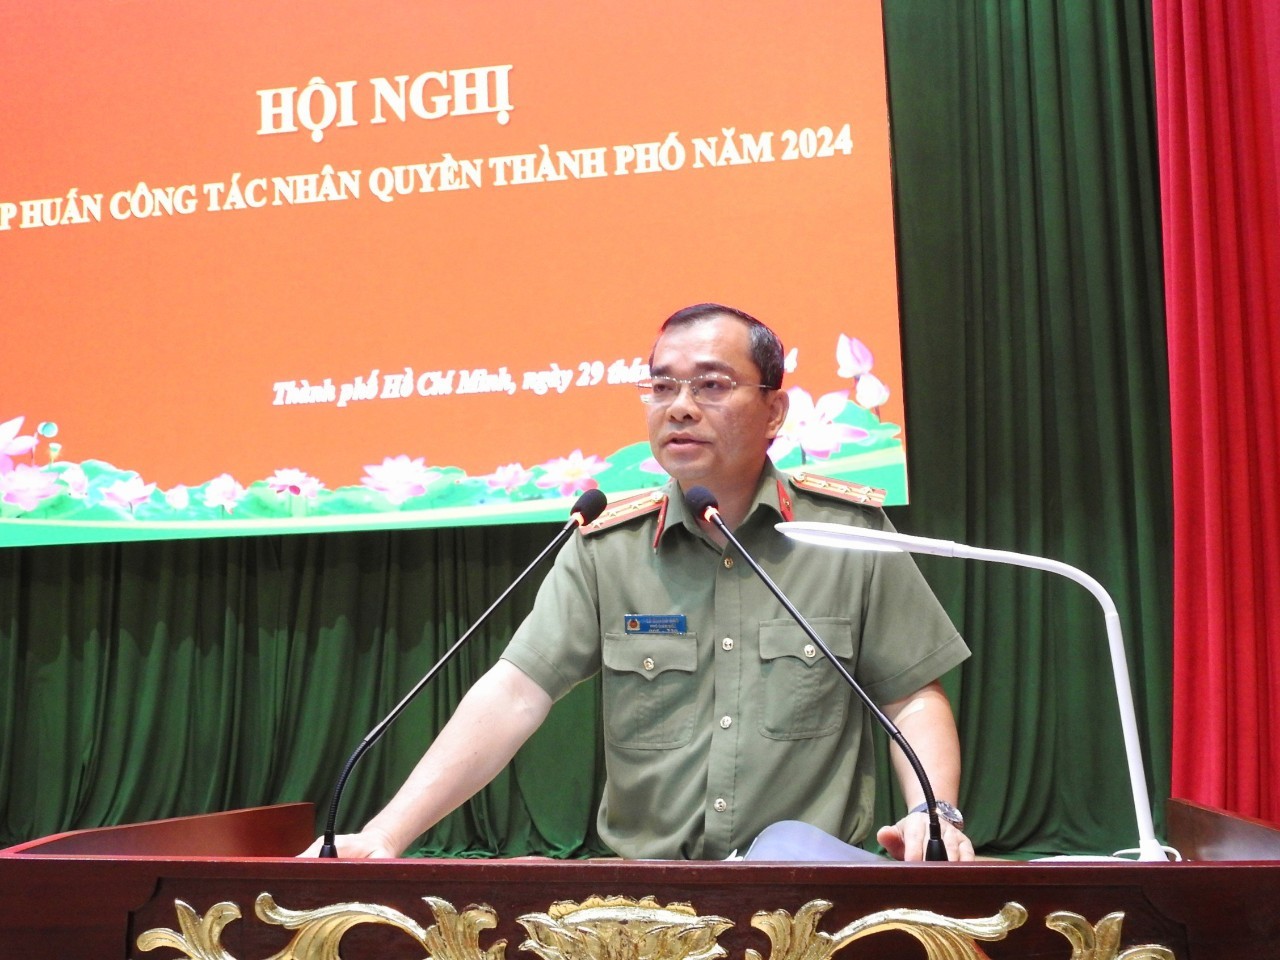 Hội nghị tập huấn công tác nhân quyền thành phố Hồ Chí Minh năm 2024